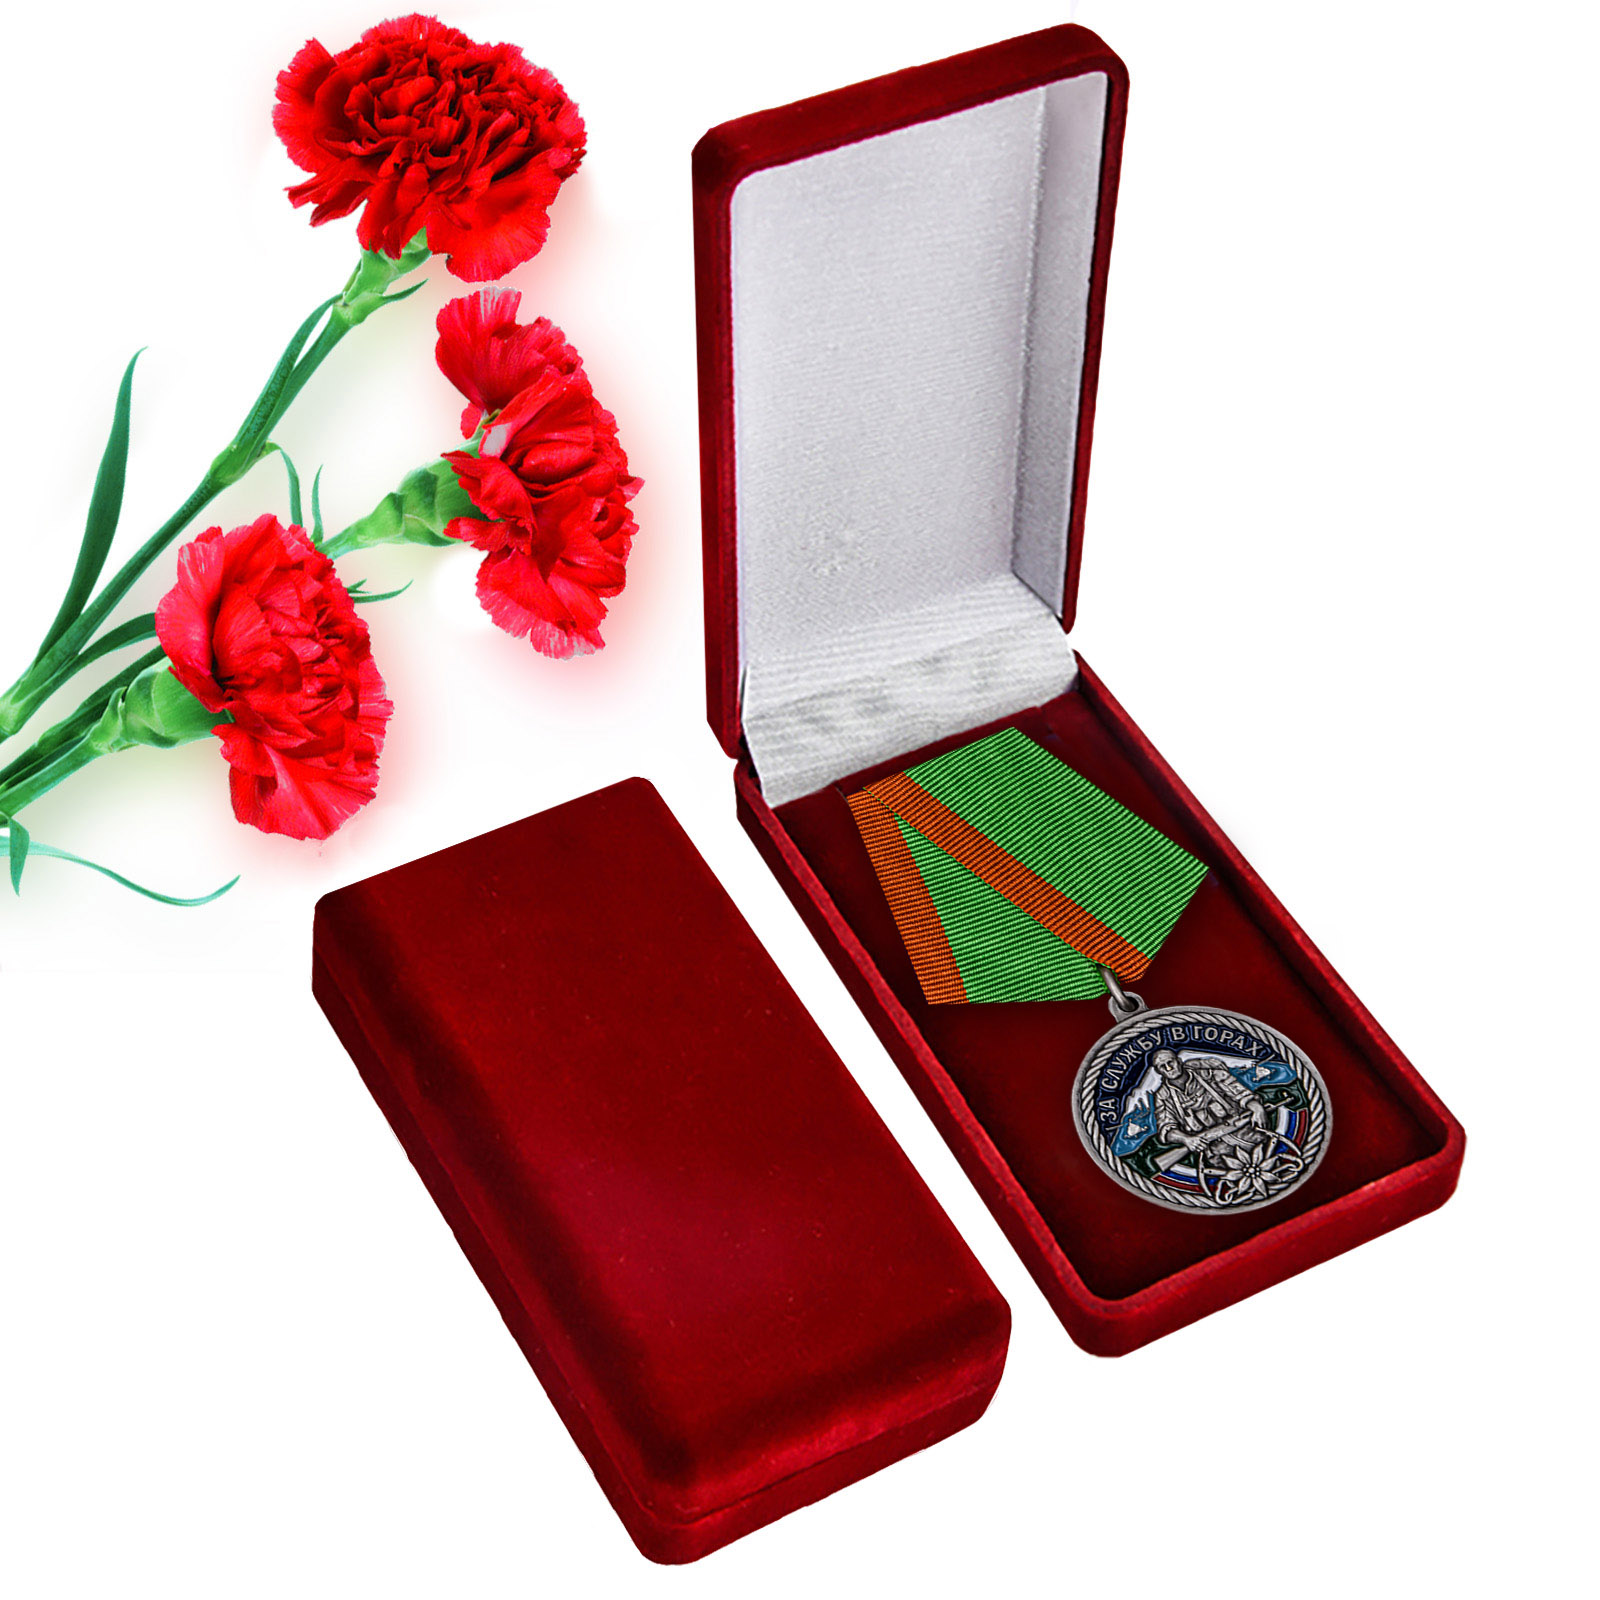 Купить памятную медаль За службу в горах в красивом подарочном футляре с доставкой